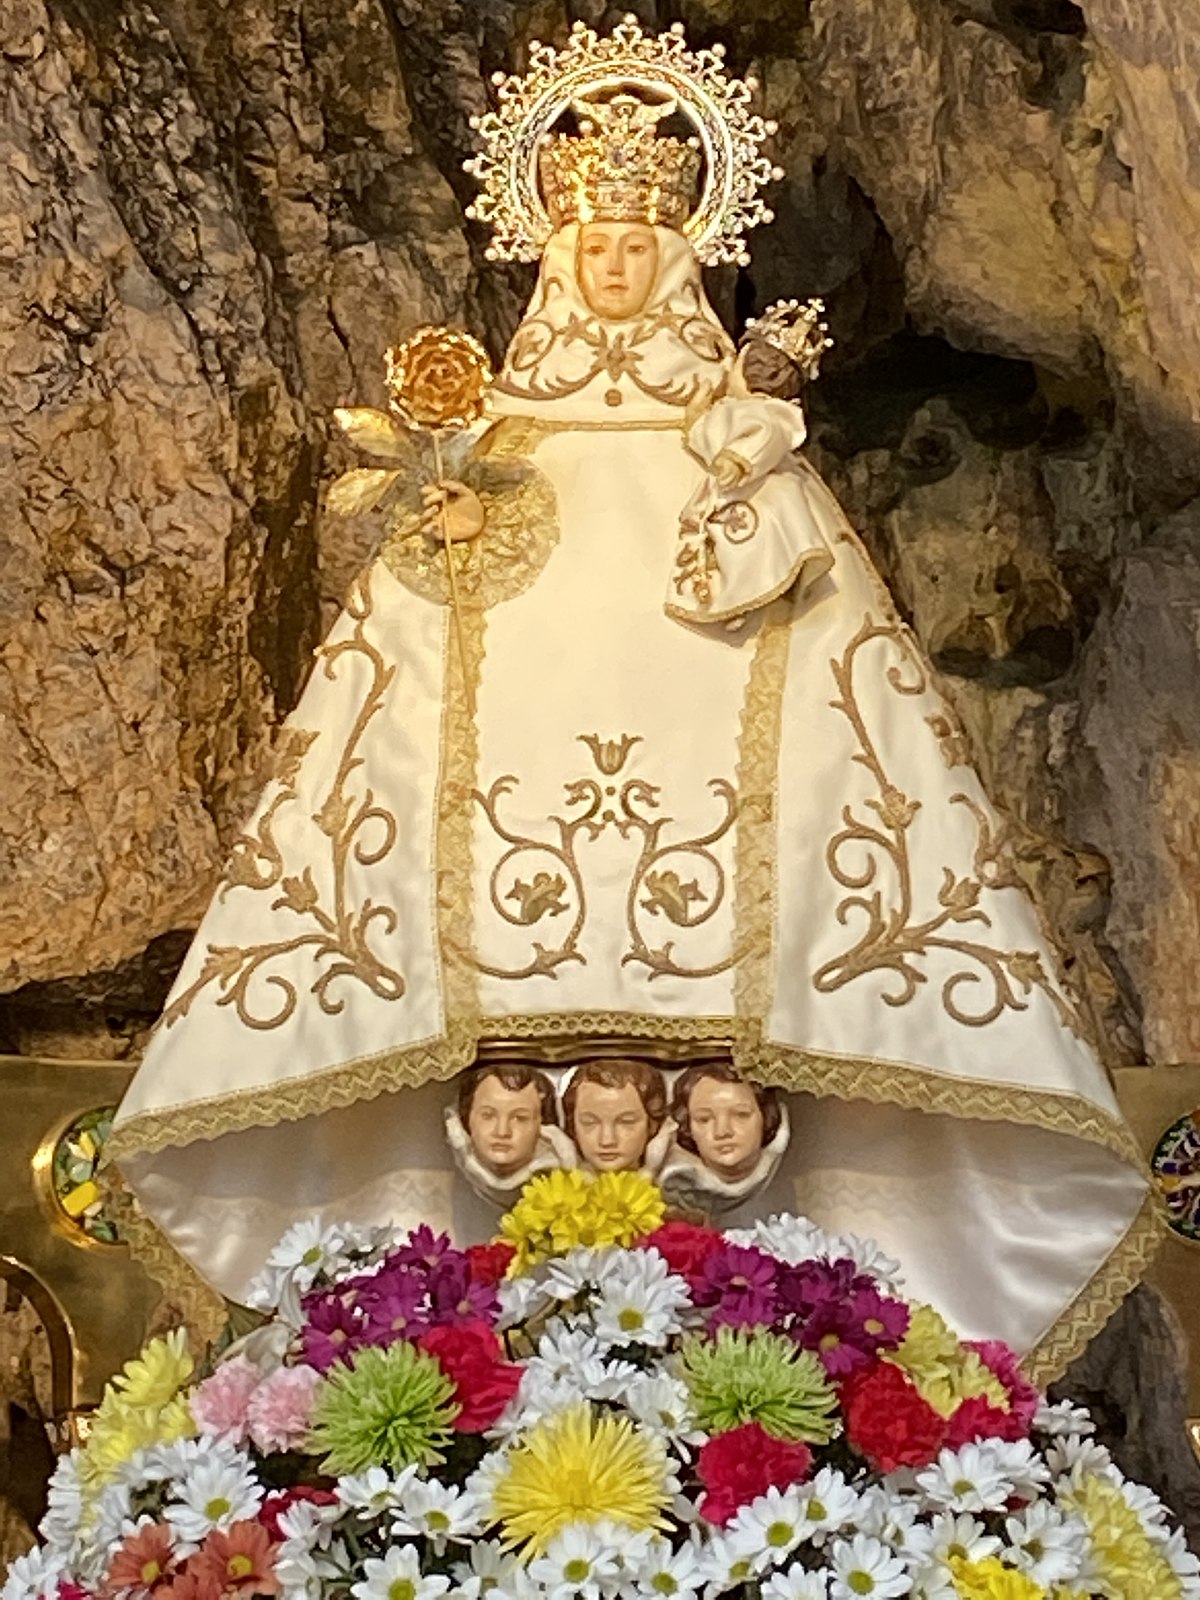 Virgen de Covadonga - Wikipedia, la enciclopedia libre